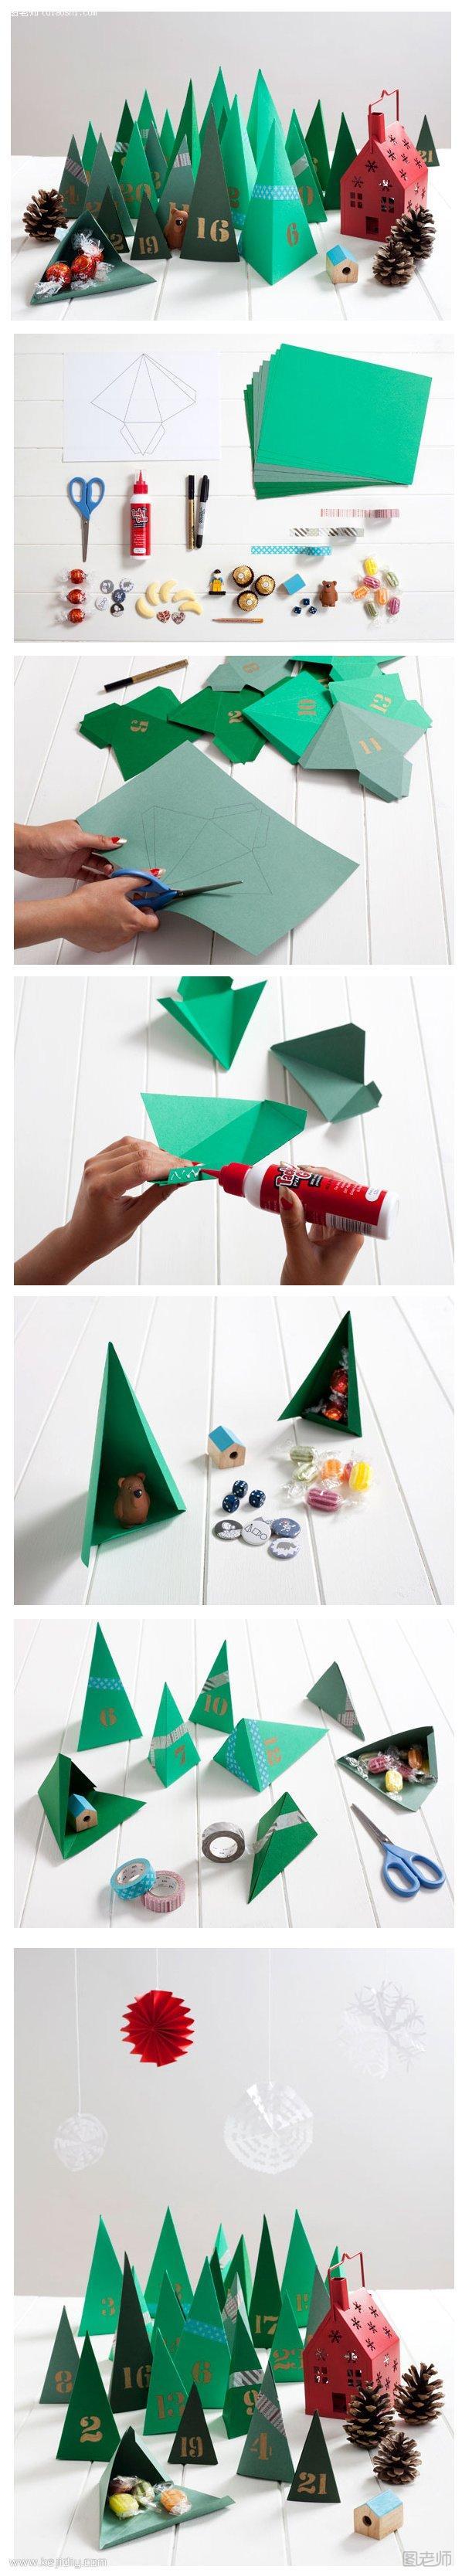 卡纸折纸手工制作圣诞元素礼物包装盒- www.kejidiy.com